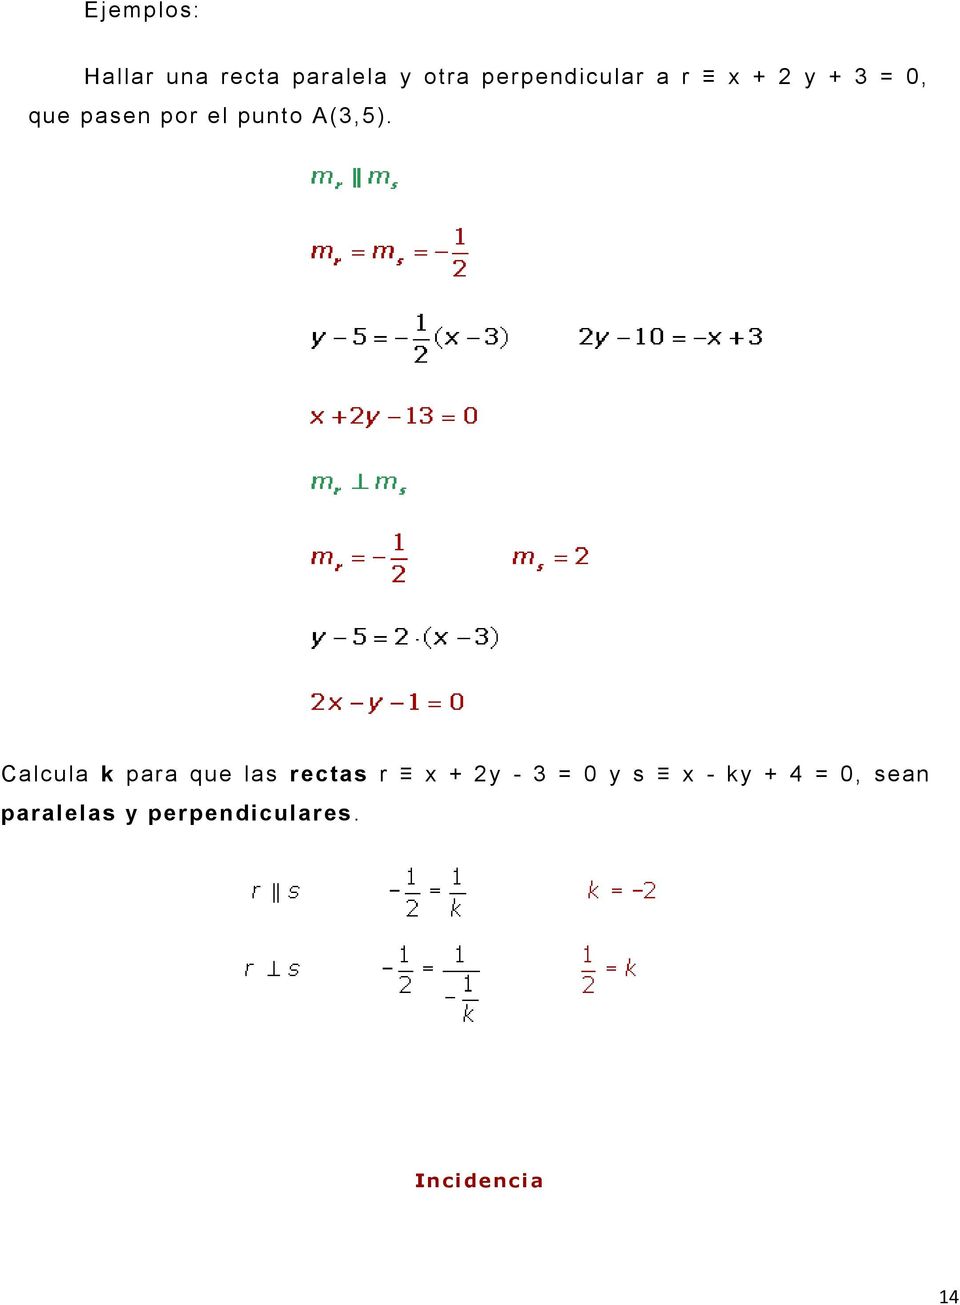 Calcula k para que las rectas r x + 2y - 3 = 0 y s x -